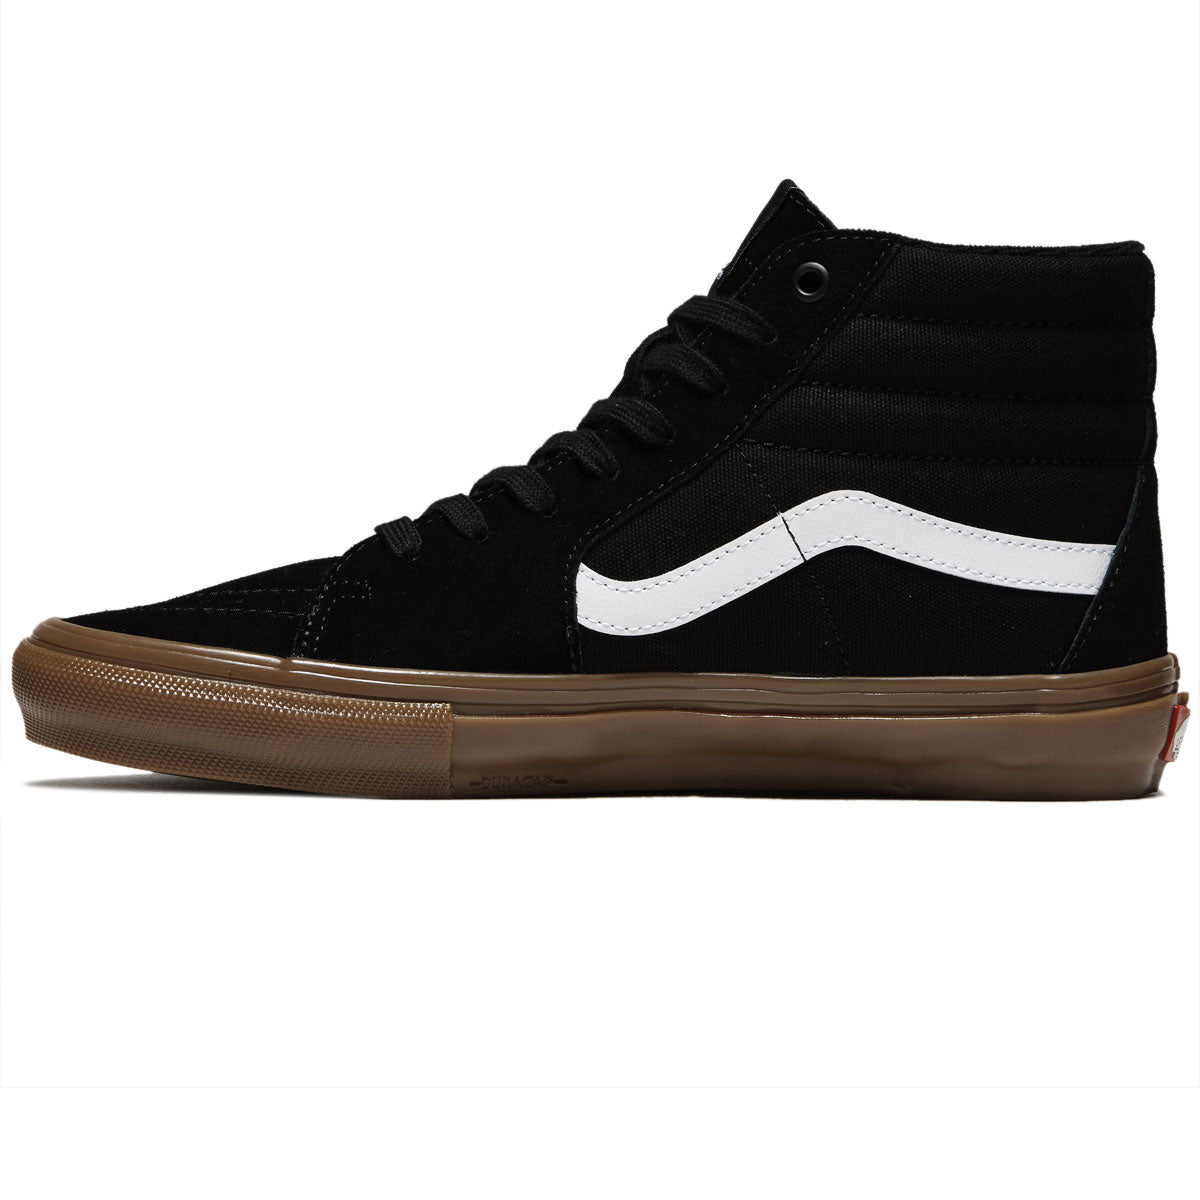 Vans Skate Sk8-hi Shoes - Black/Gum image 2